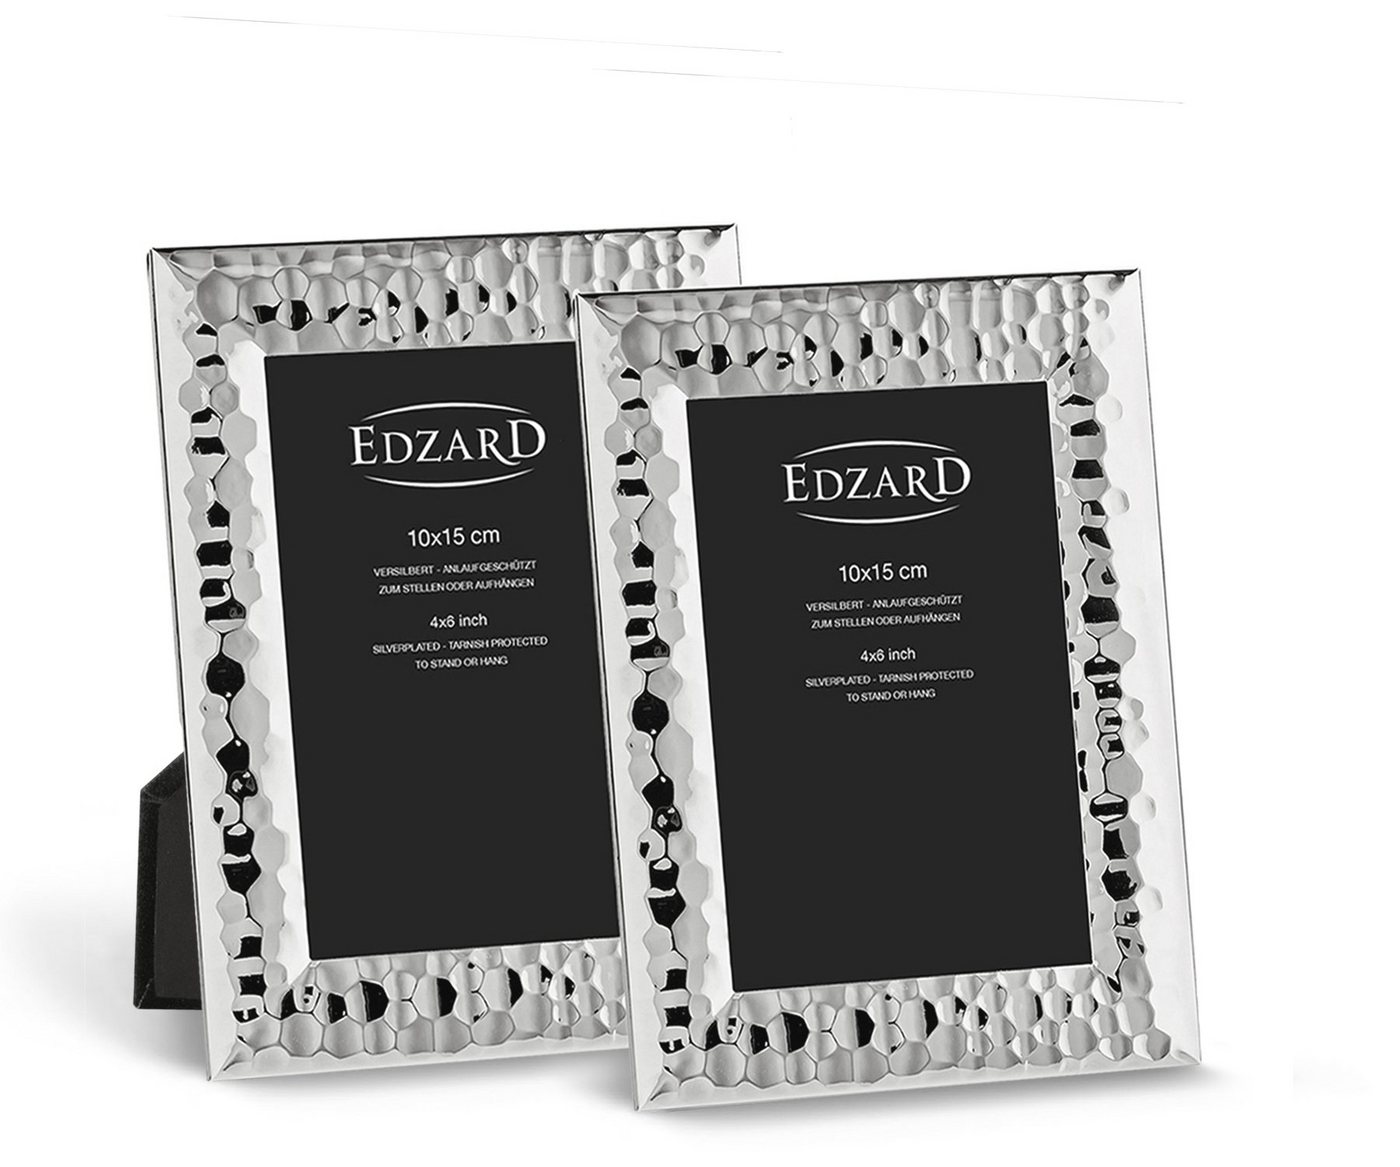 EDZARD Bilderrahmen Gubbio, versilbert und anlaufgeschützt, 2er Set für 10x15 cm Foto von EDZARD